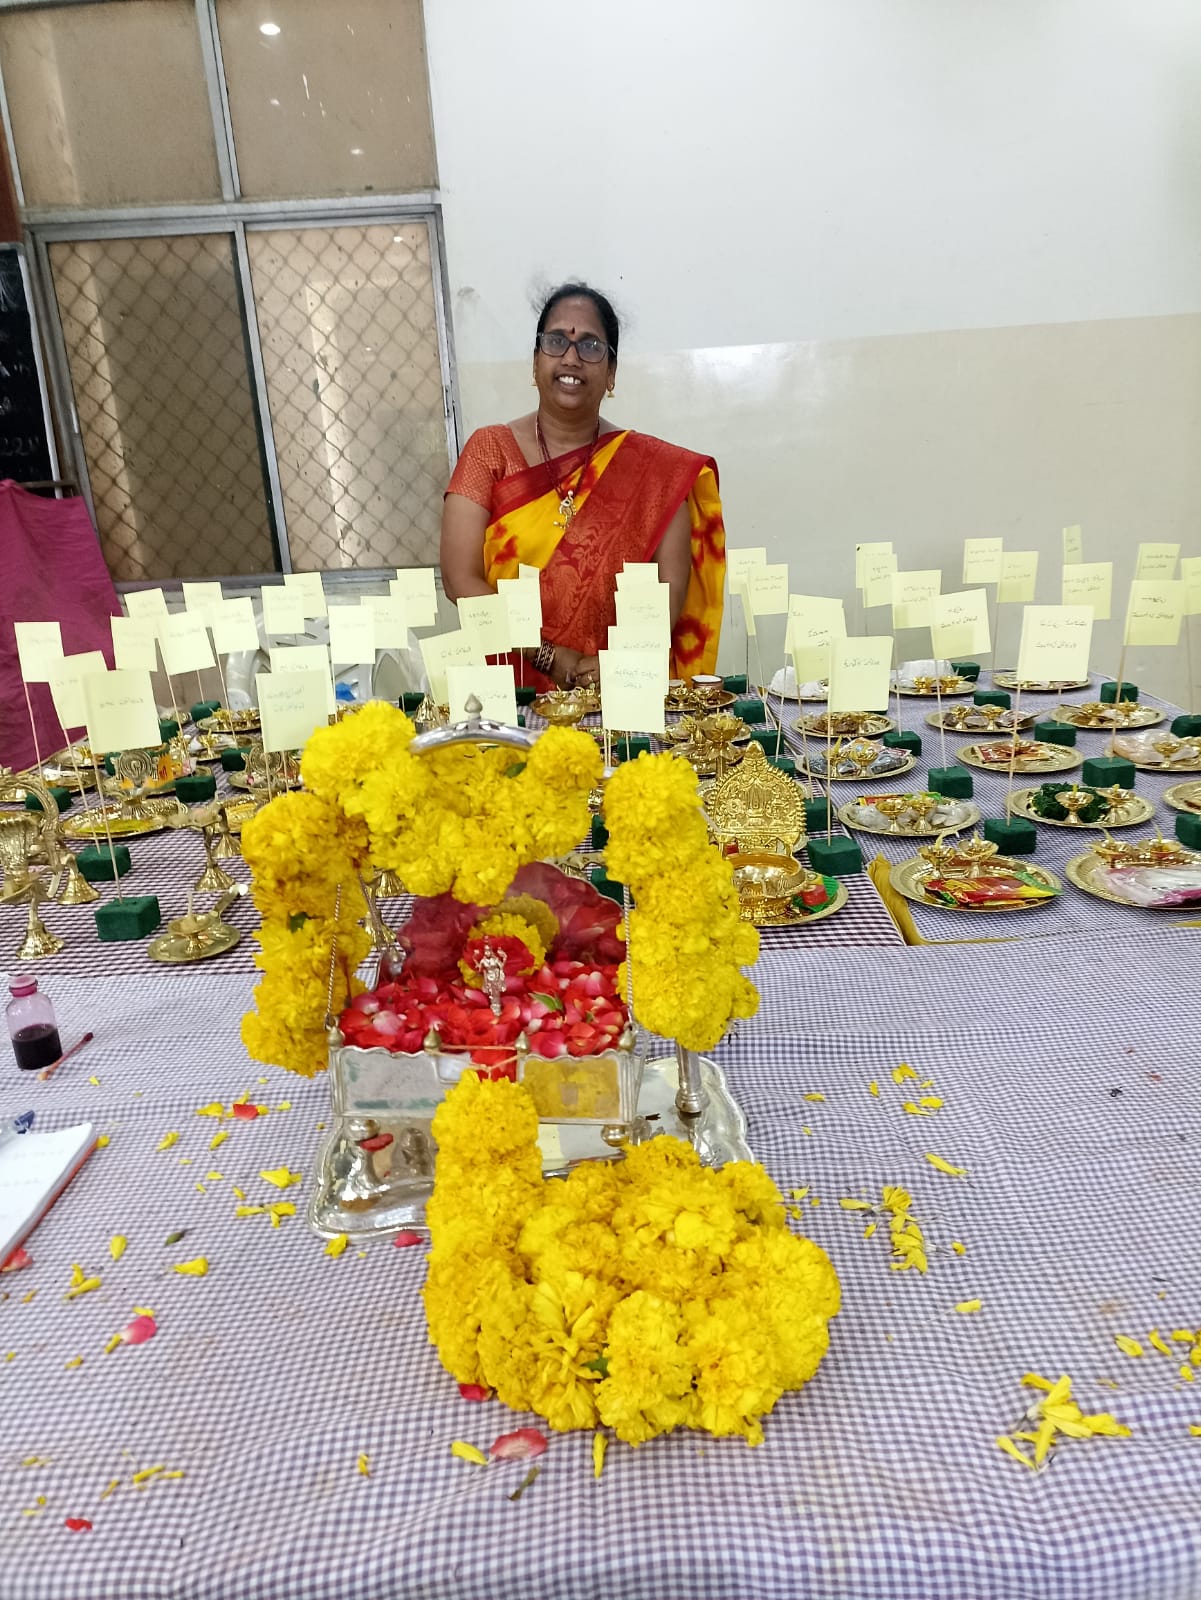 హైదరాబాద్: ఖైరతాబాద్‌లో జరిగిన వాసవి జయంతి ఉత్సవాలు